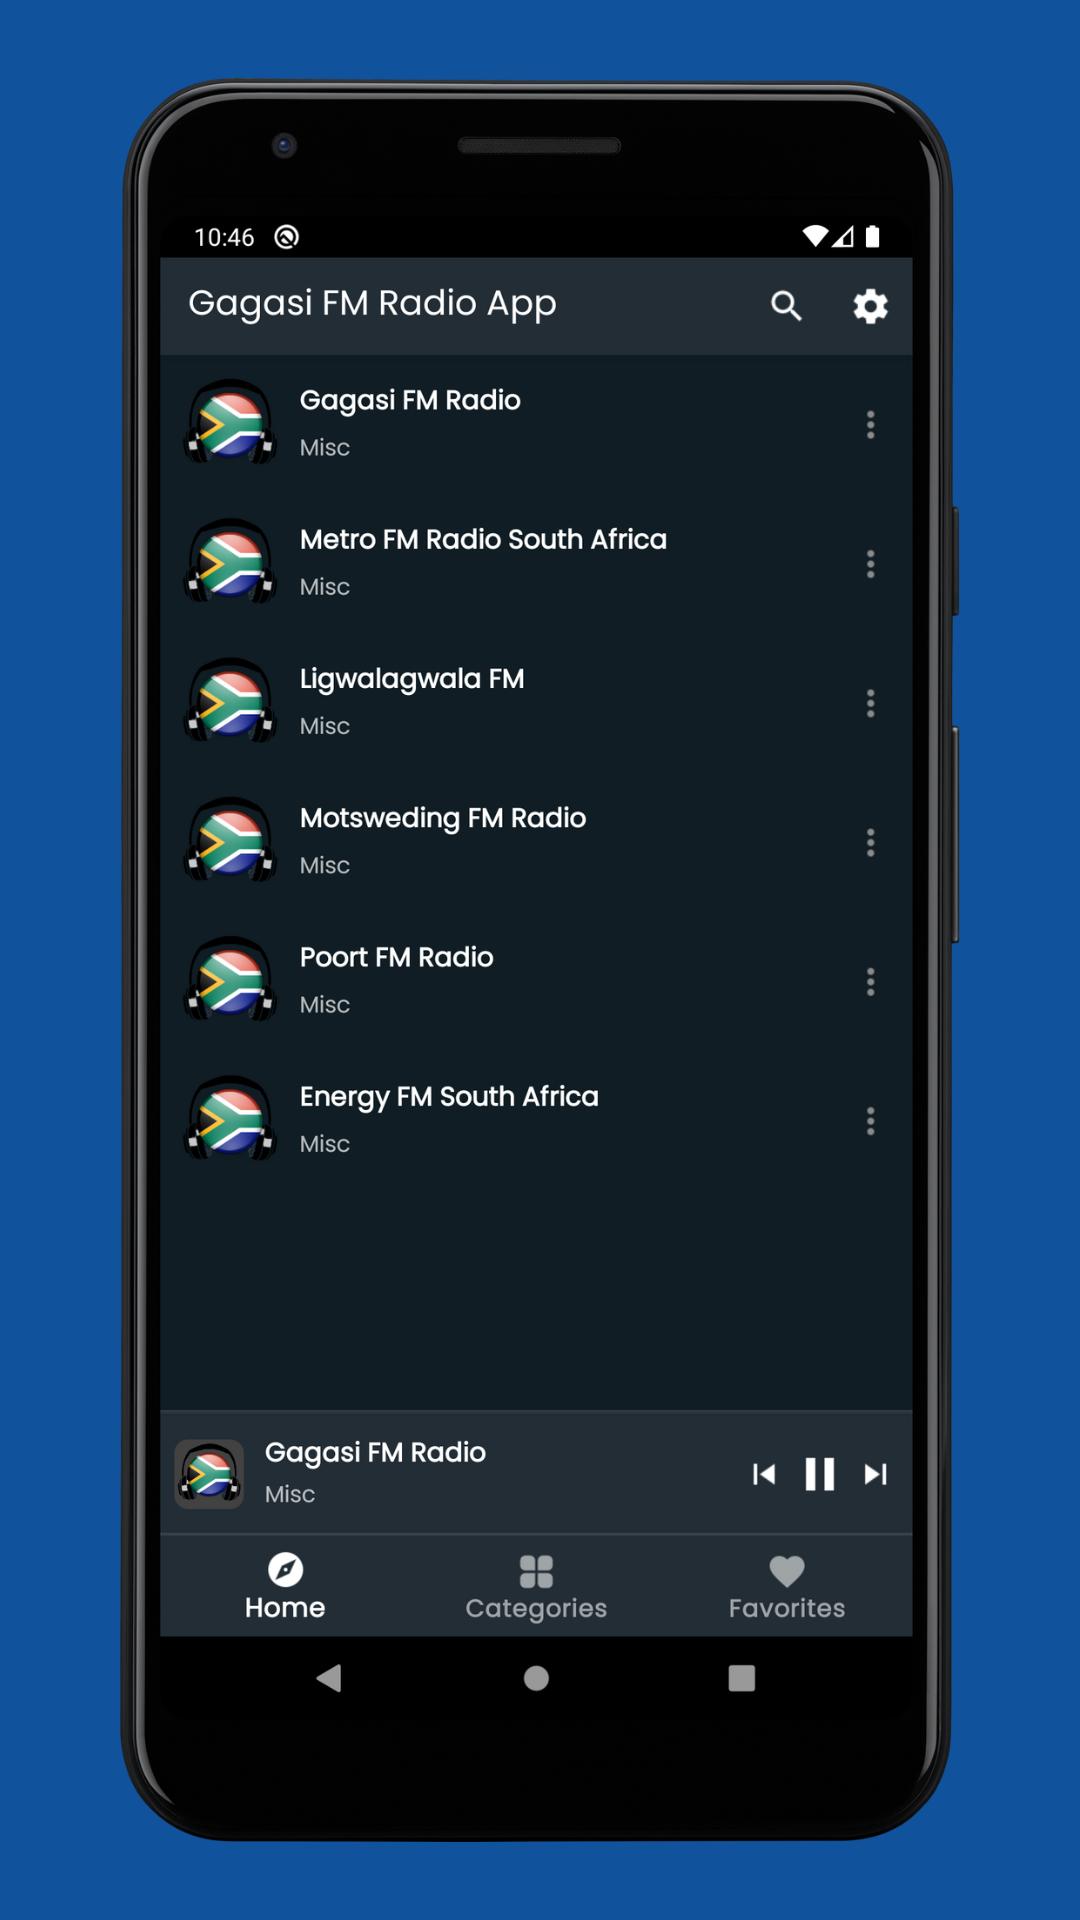 Descarga de APK de Gagasi FM Radio App para Android